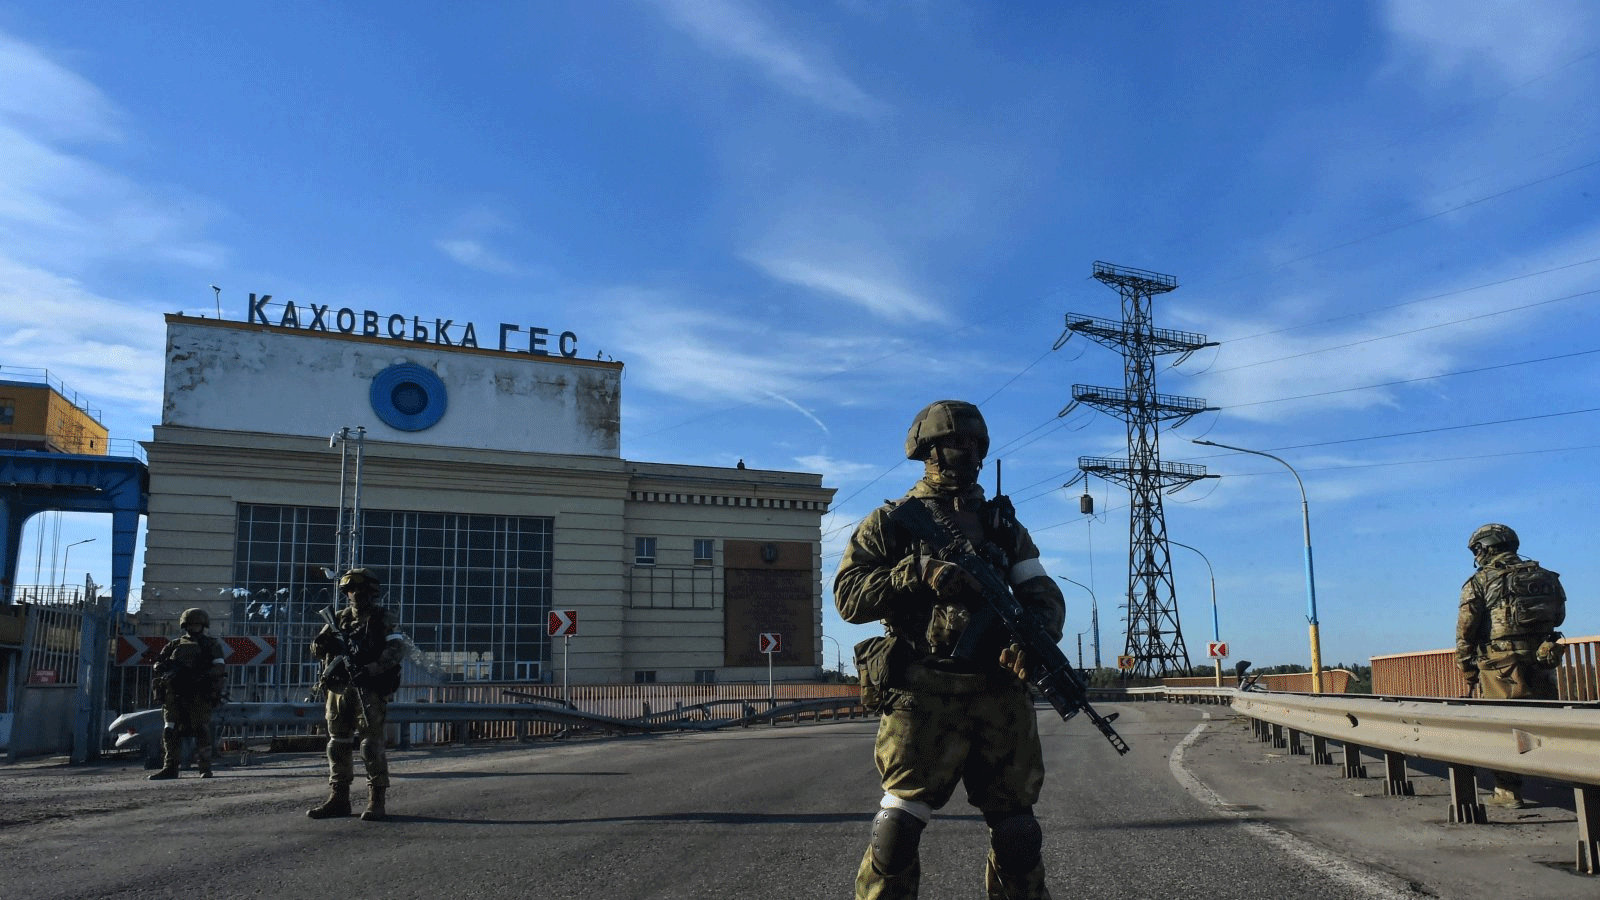 دورية للجنود الروس في محطة كاخوفكا للطاقة الكهرومائية، خيرسون أوبلاست، أوكرانيا، 20 أيار\مايو 2022